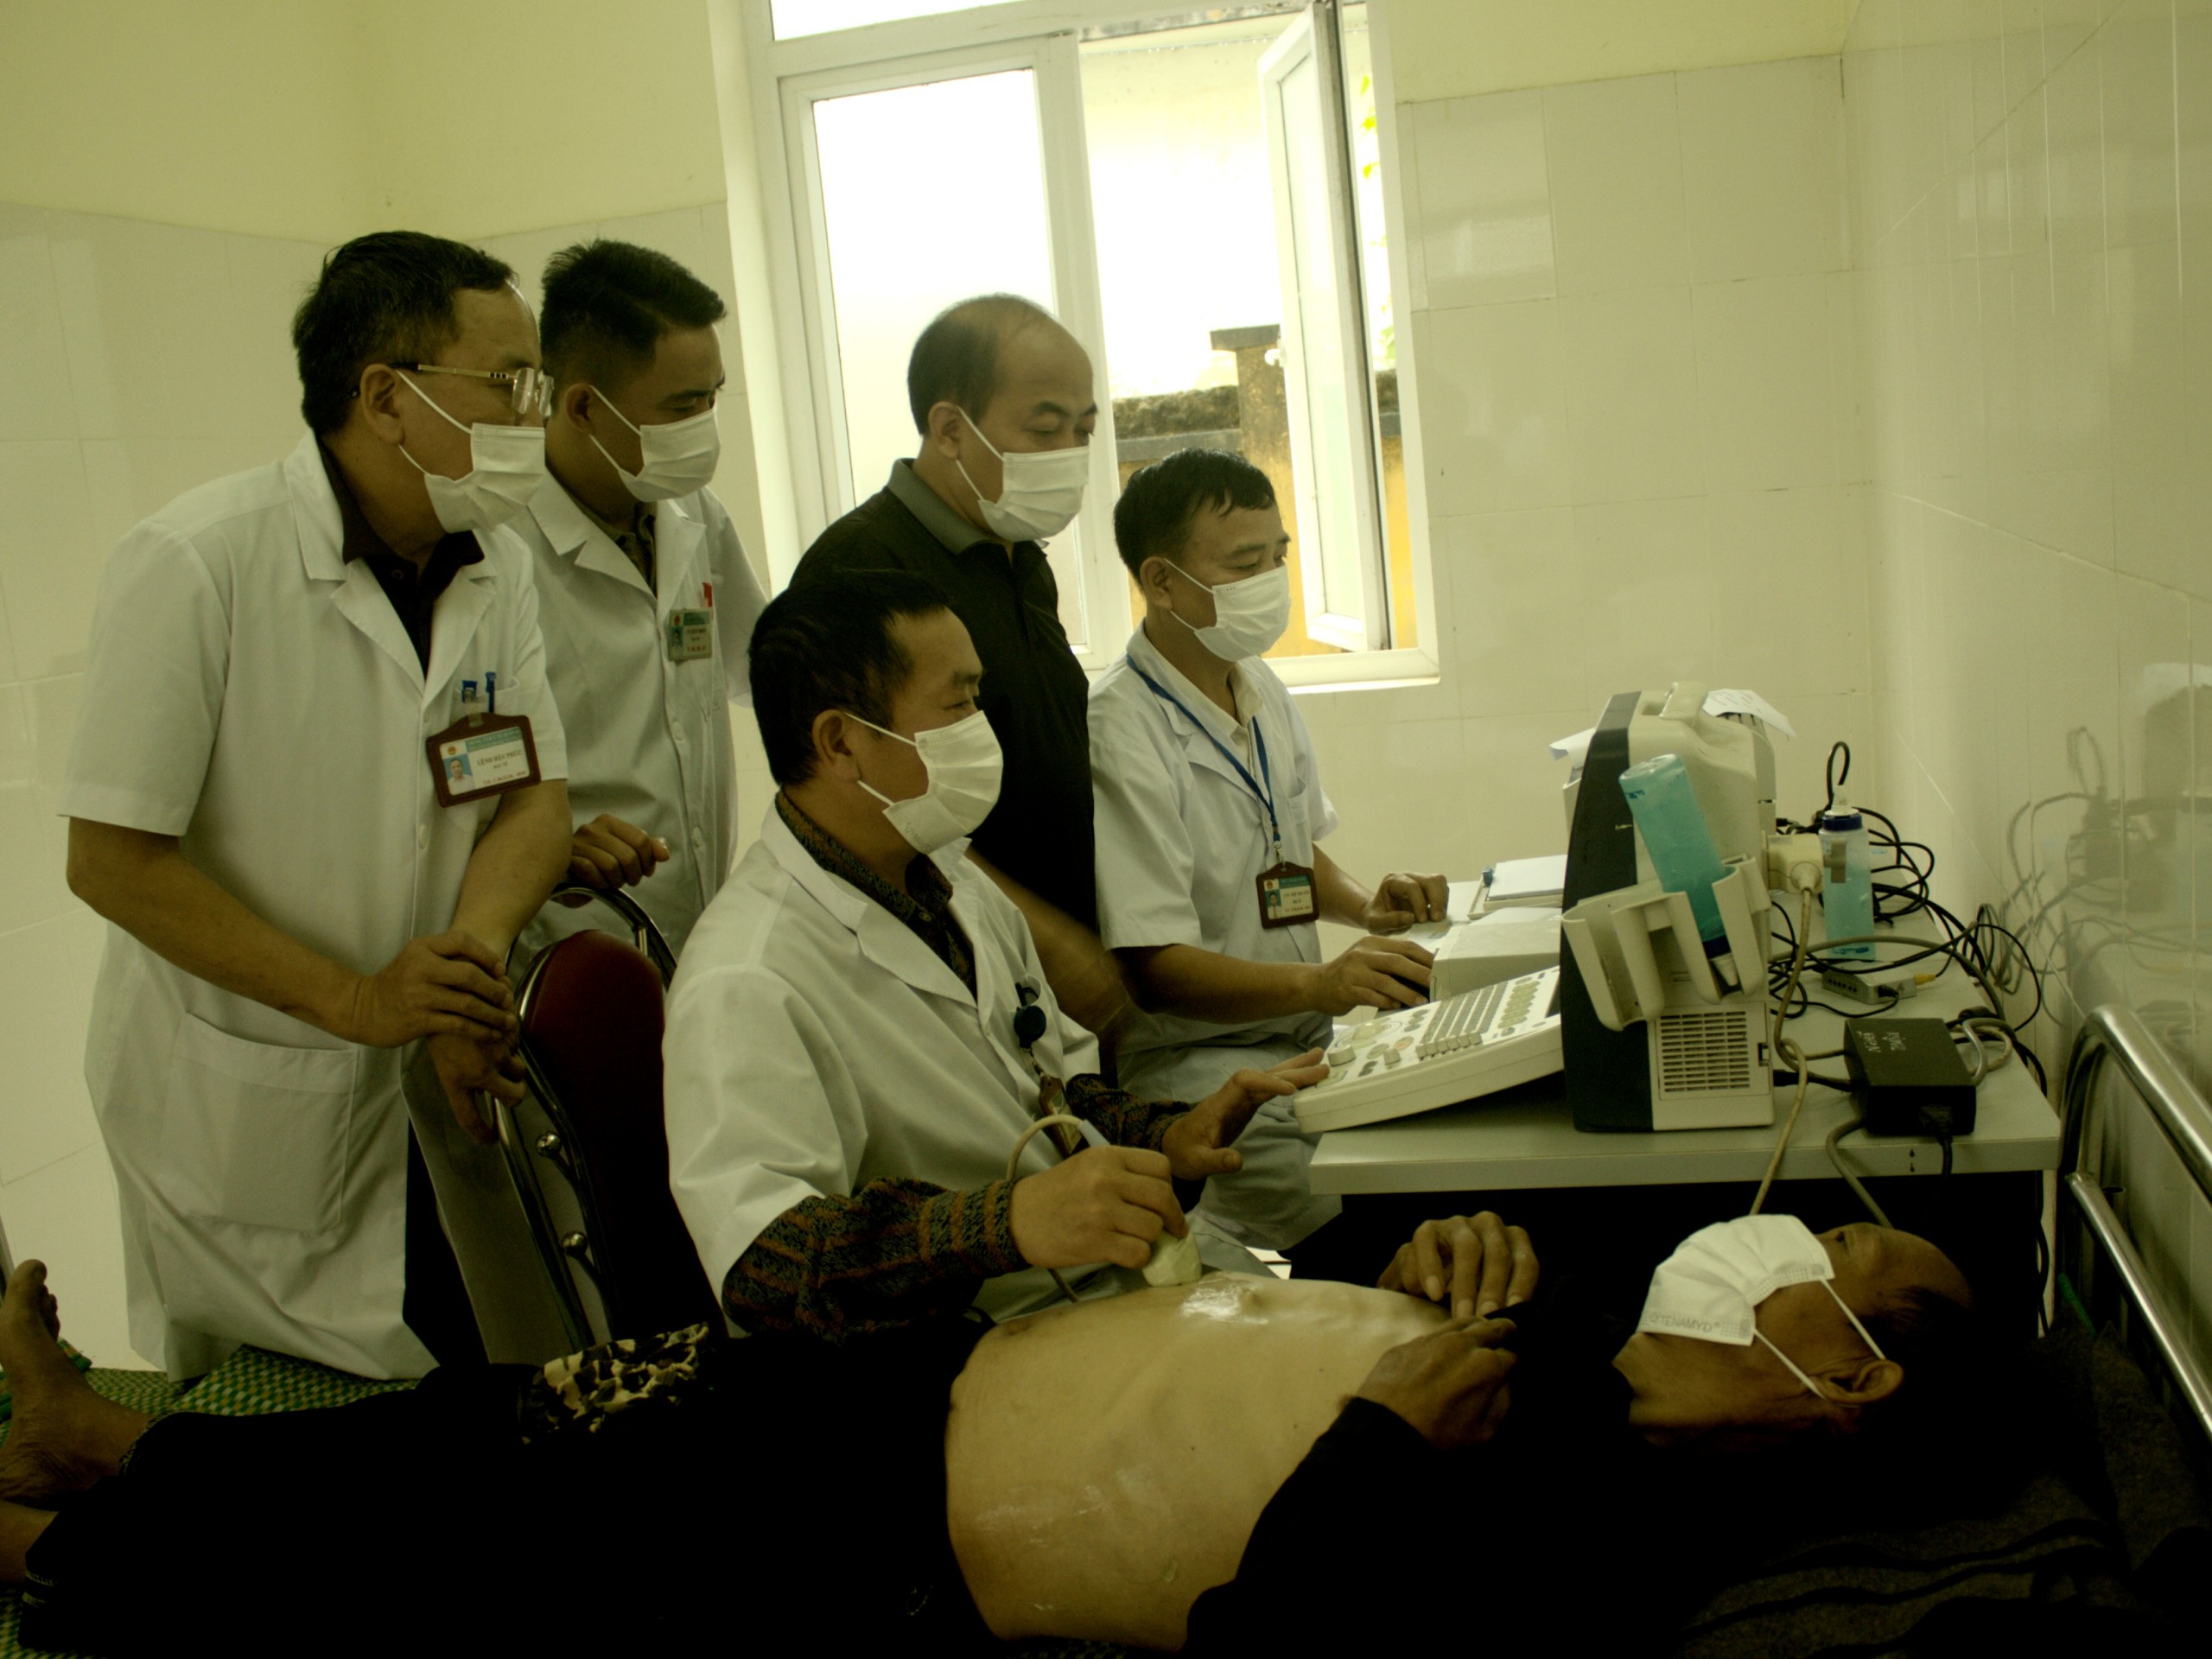 Bác sỹ CKI Nguyễn Thế Cường - Trưởng khoa cận lâm sàng Bệnh viện phổi hướng dẫn kỹ thuật siêu âm màng phổi, siêu âm ổ bụng tại Phòng khám Đa khoa khu vực Tùng Vài